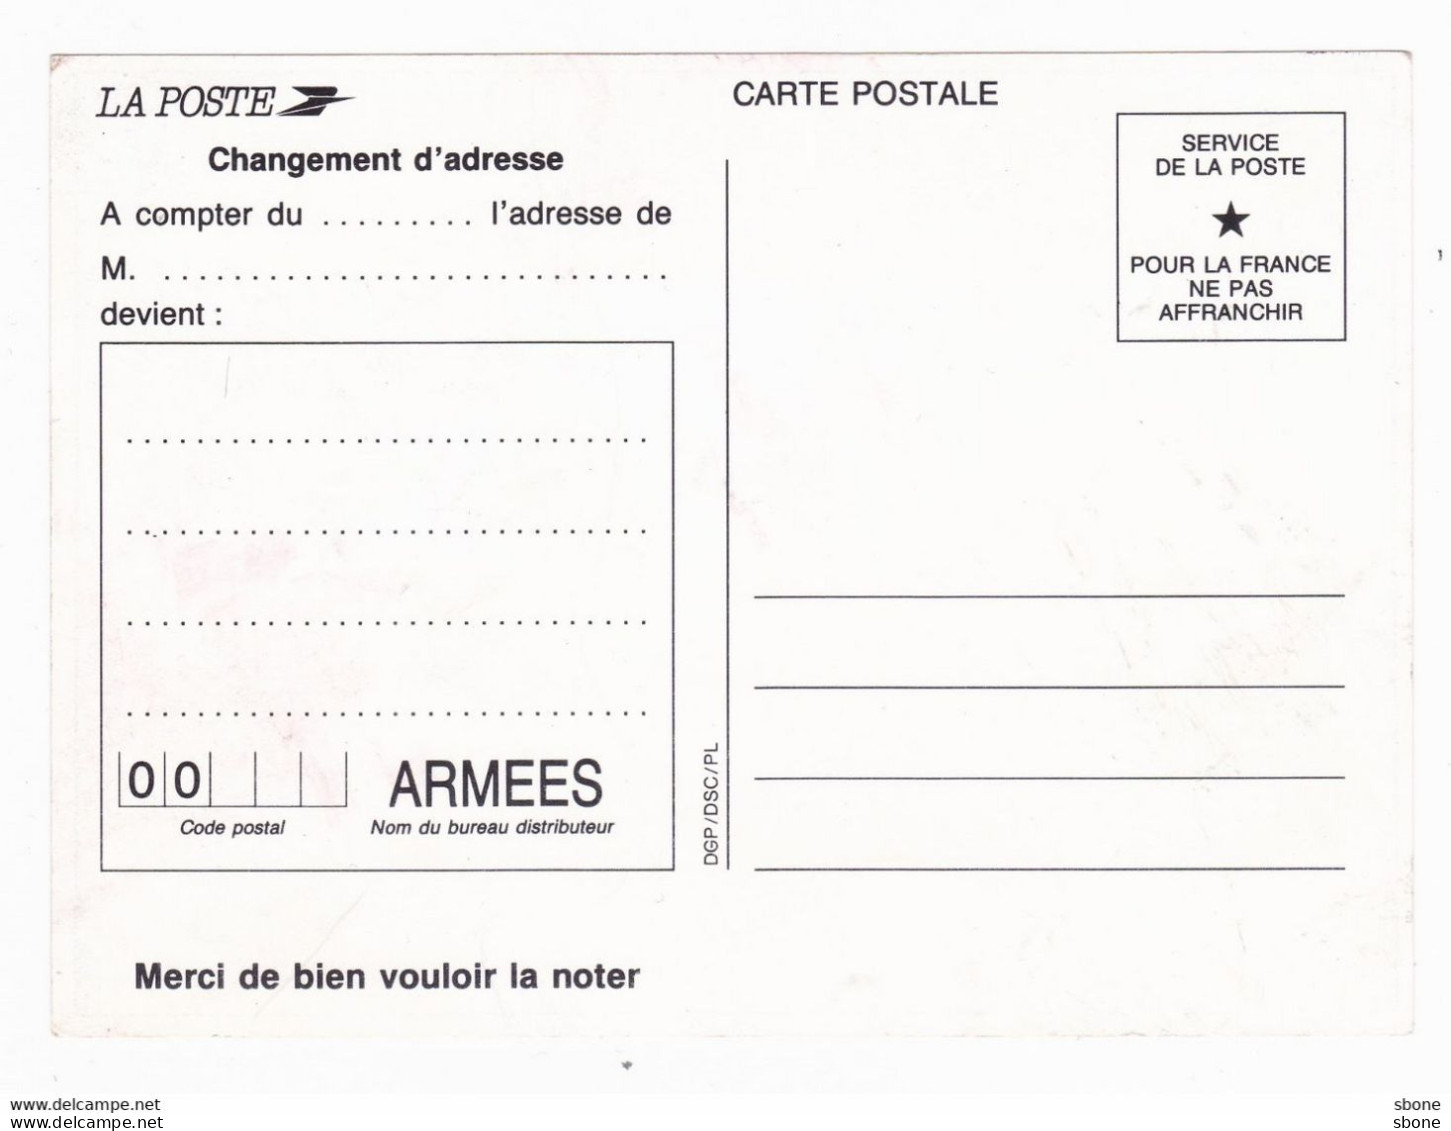 Carte En Franchise Militaire - Et Surtout N'oubliez Pas Notre Code Postal - Covers & Documents